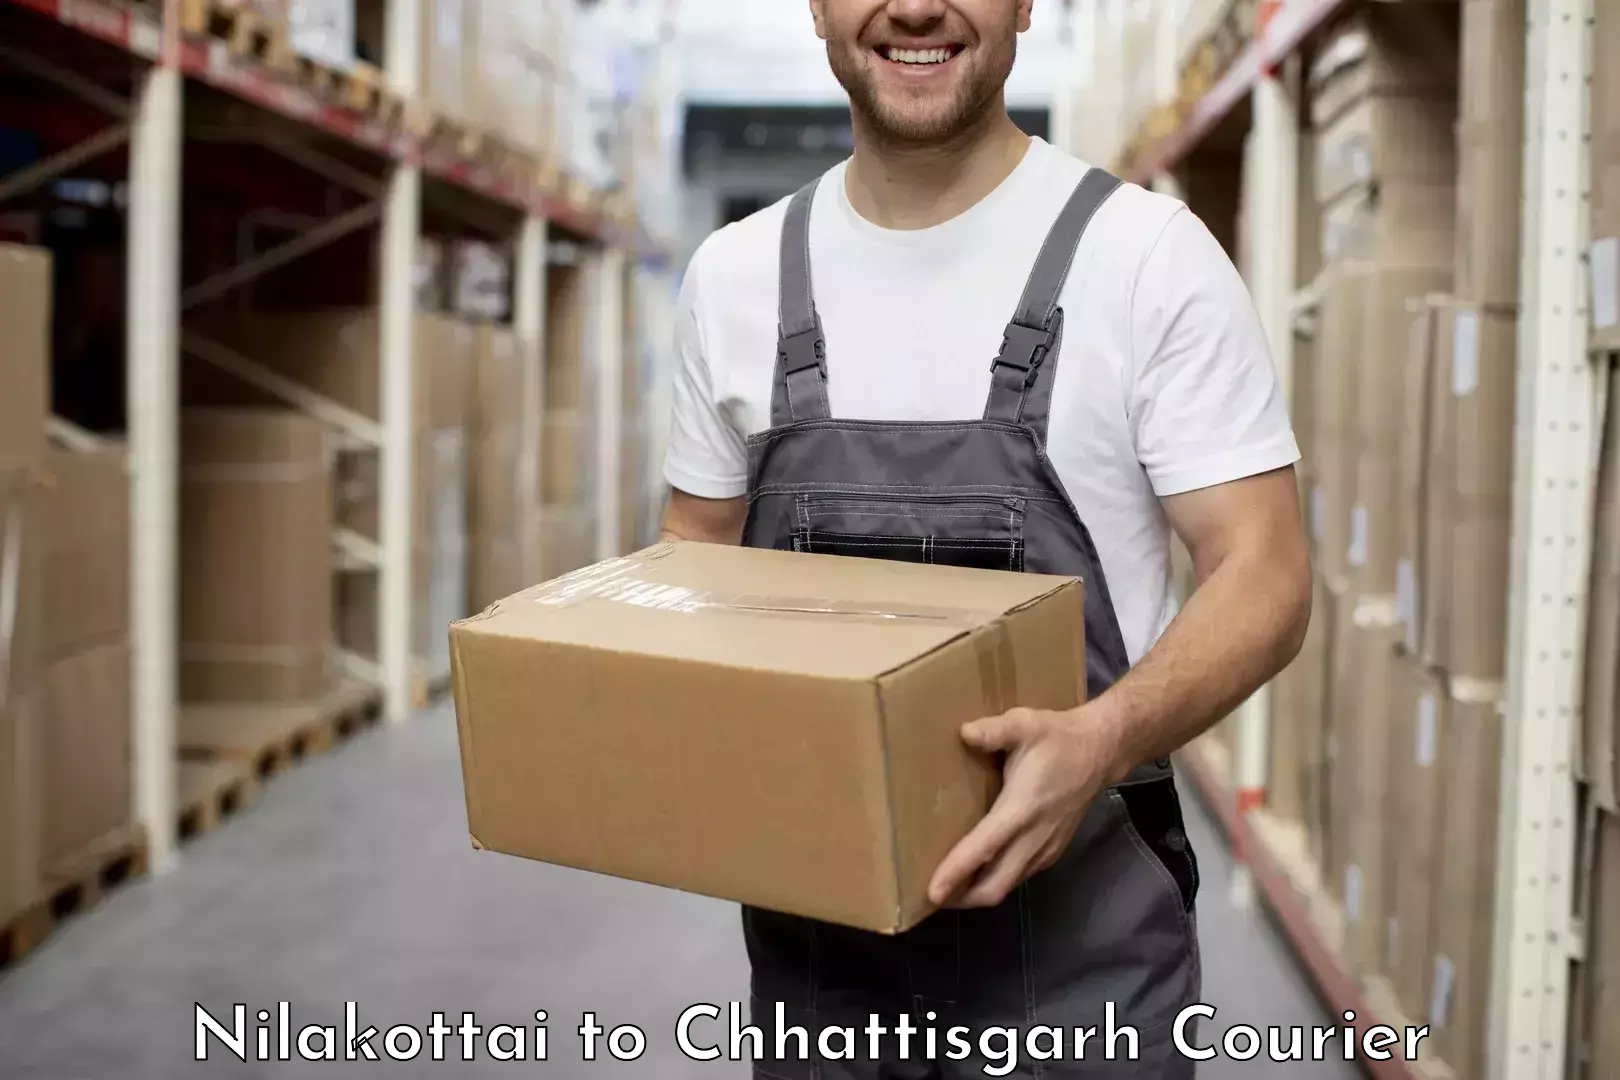 Reliable parcel services Nilakottai to Raipur